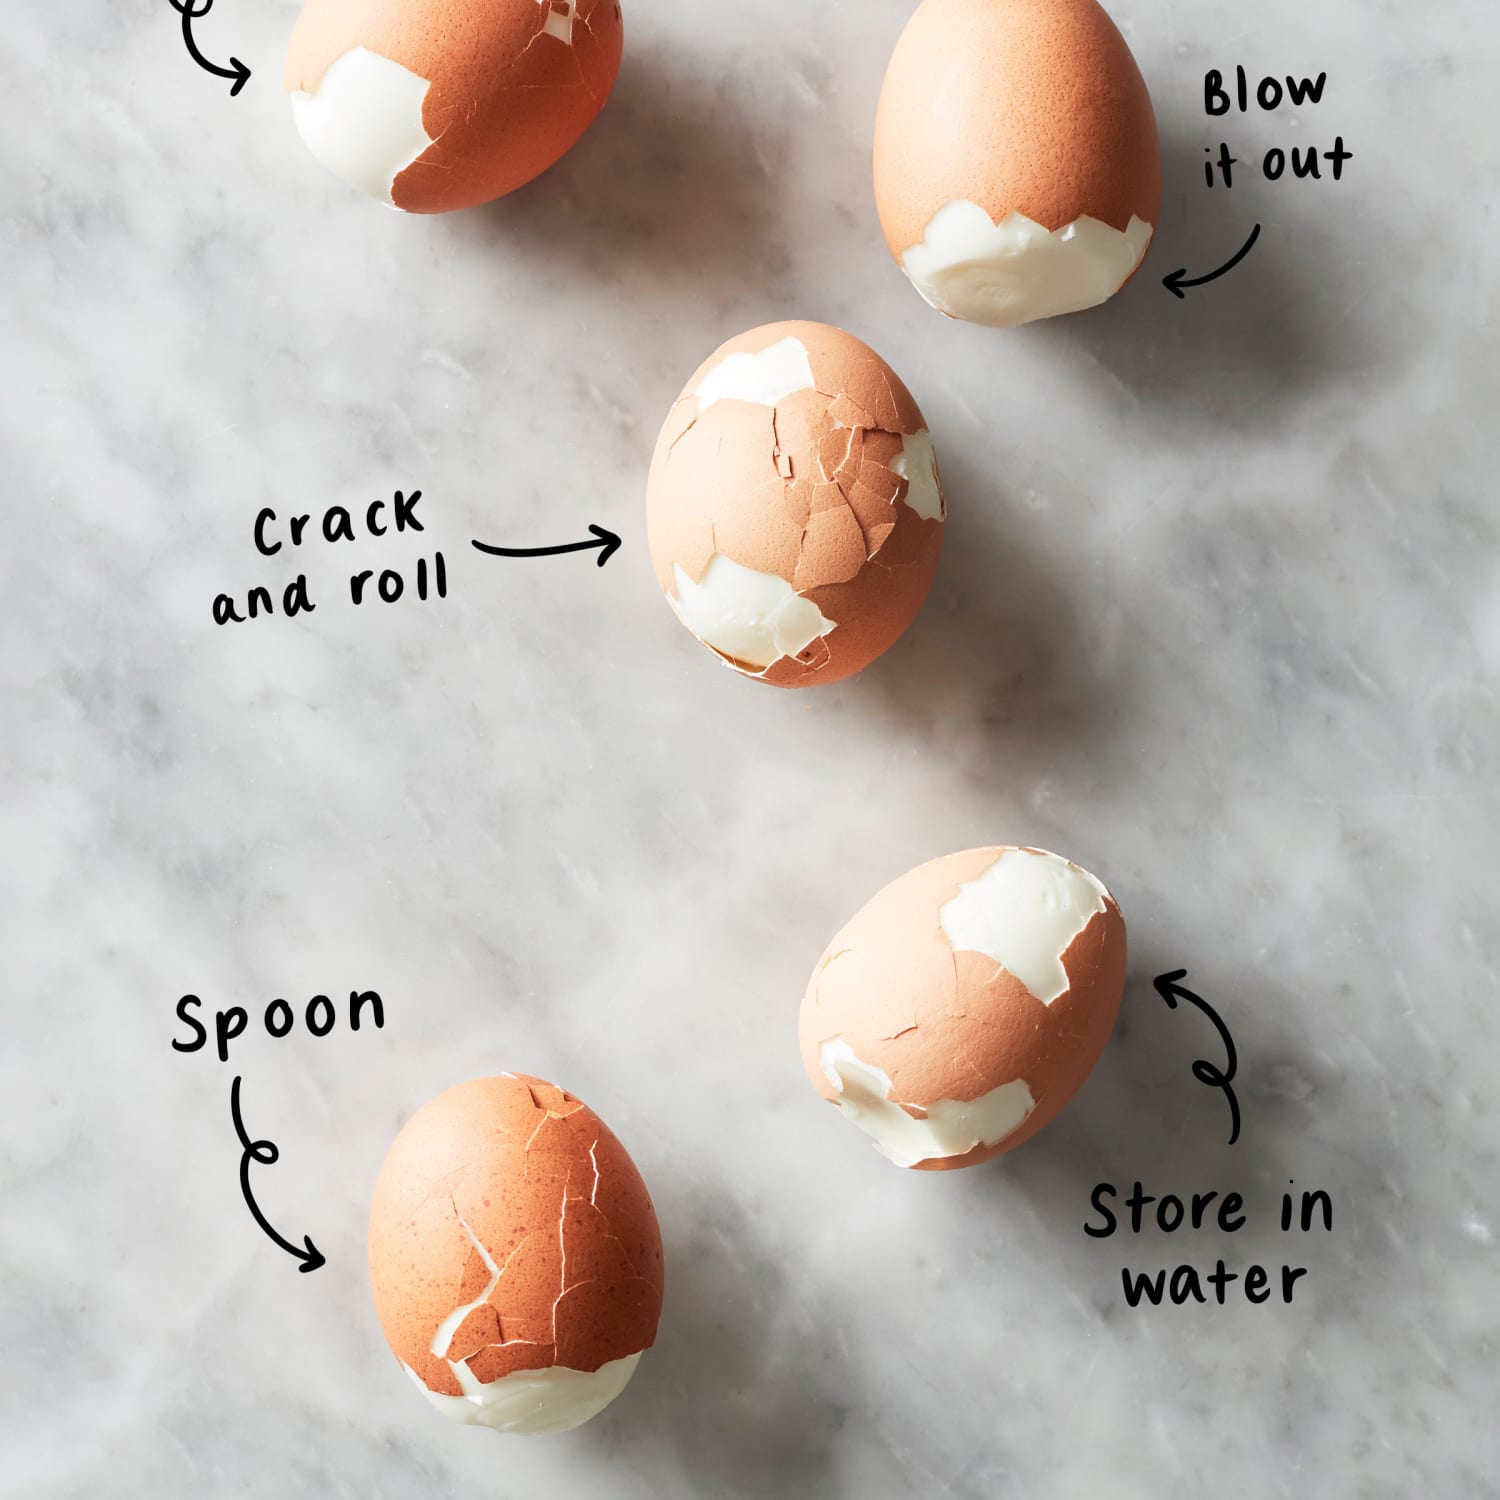 boiled egg peeler / egg shell